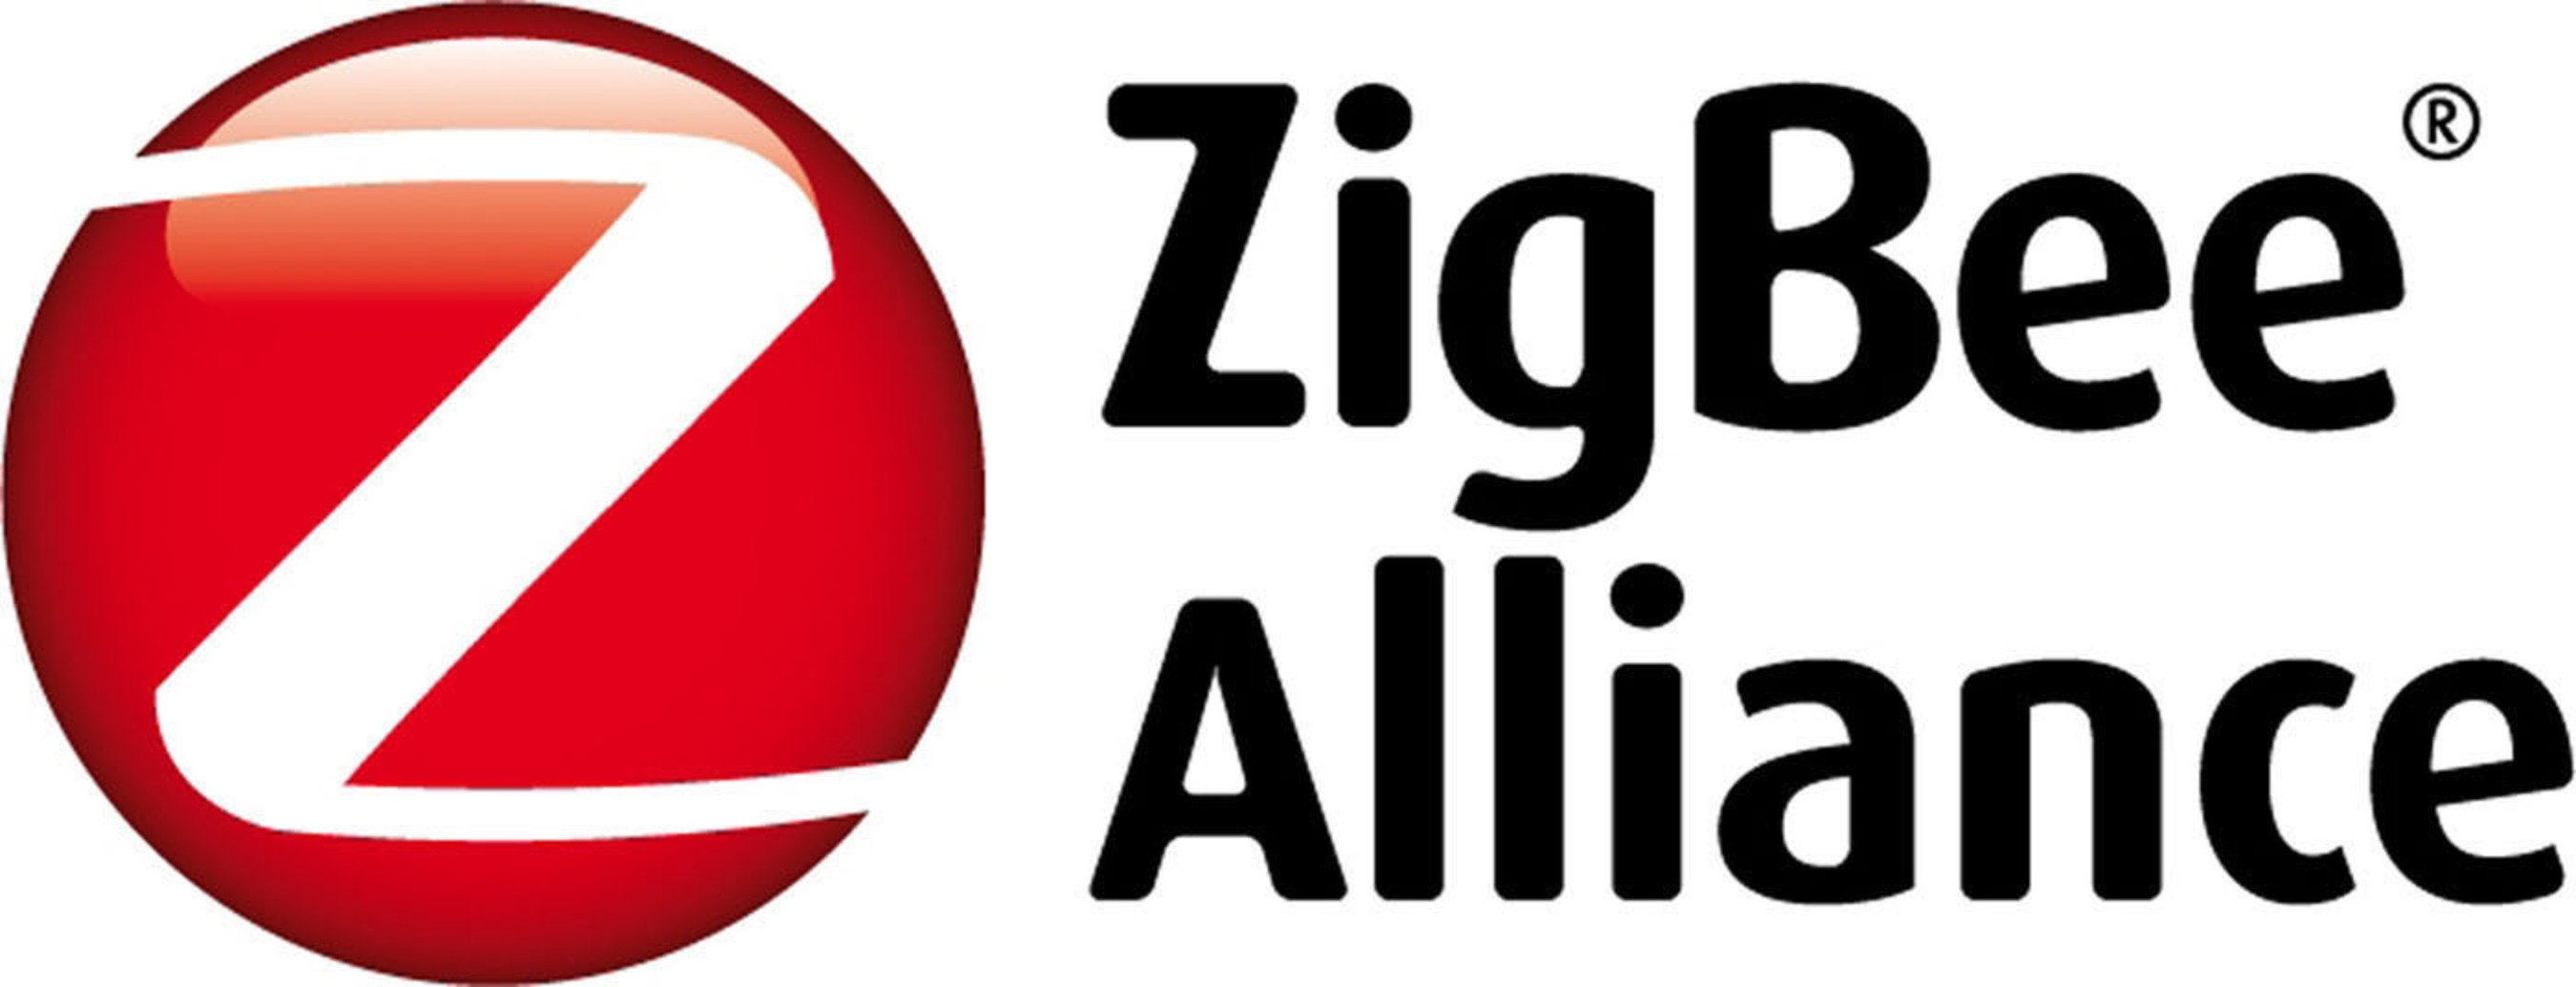 ZigBee Alliance Logo.